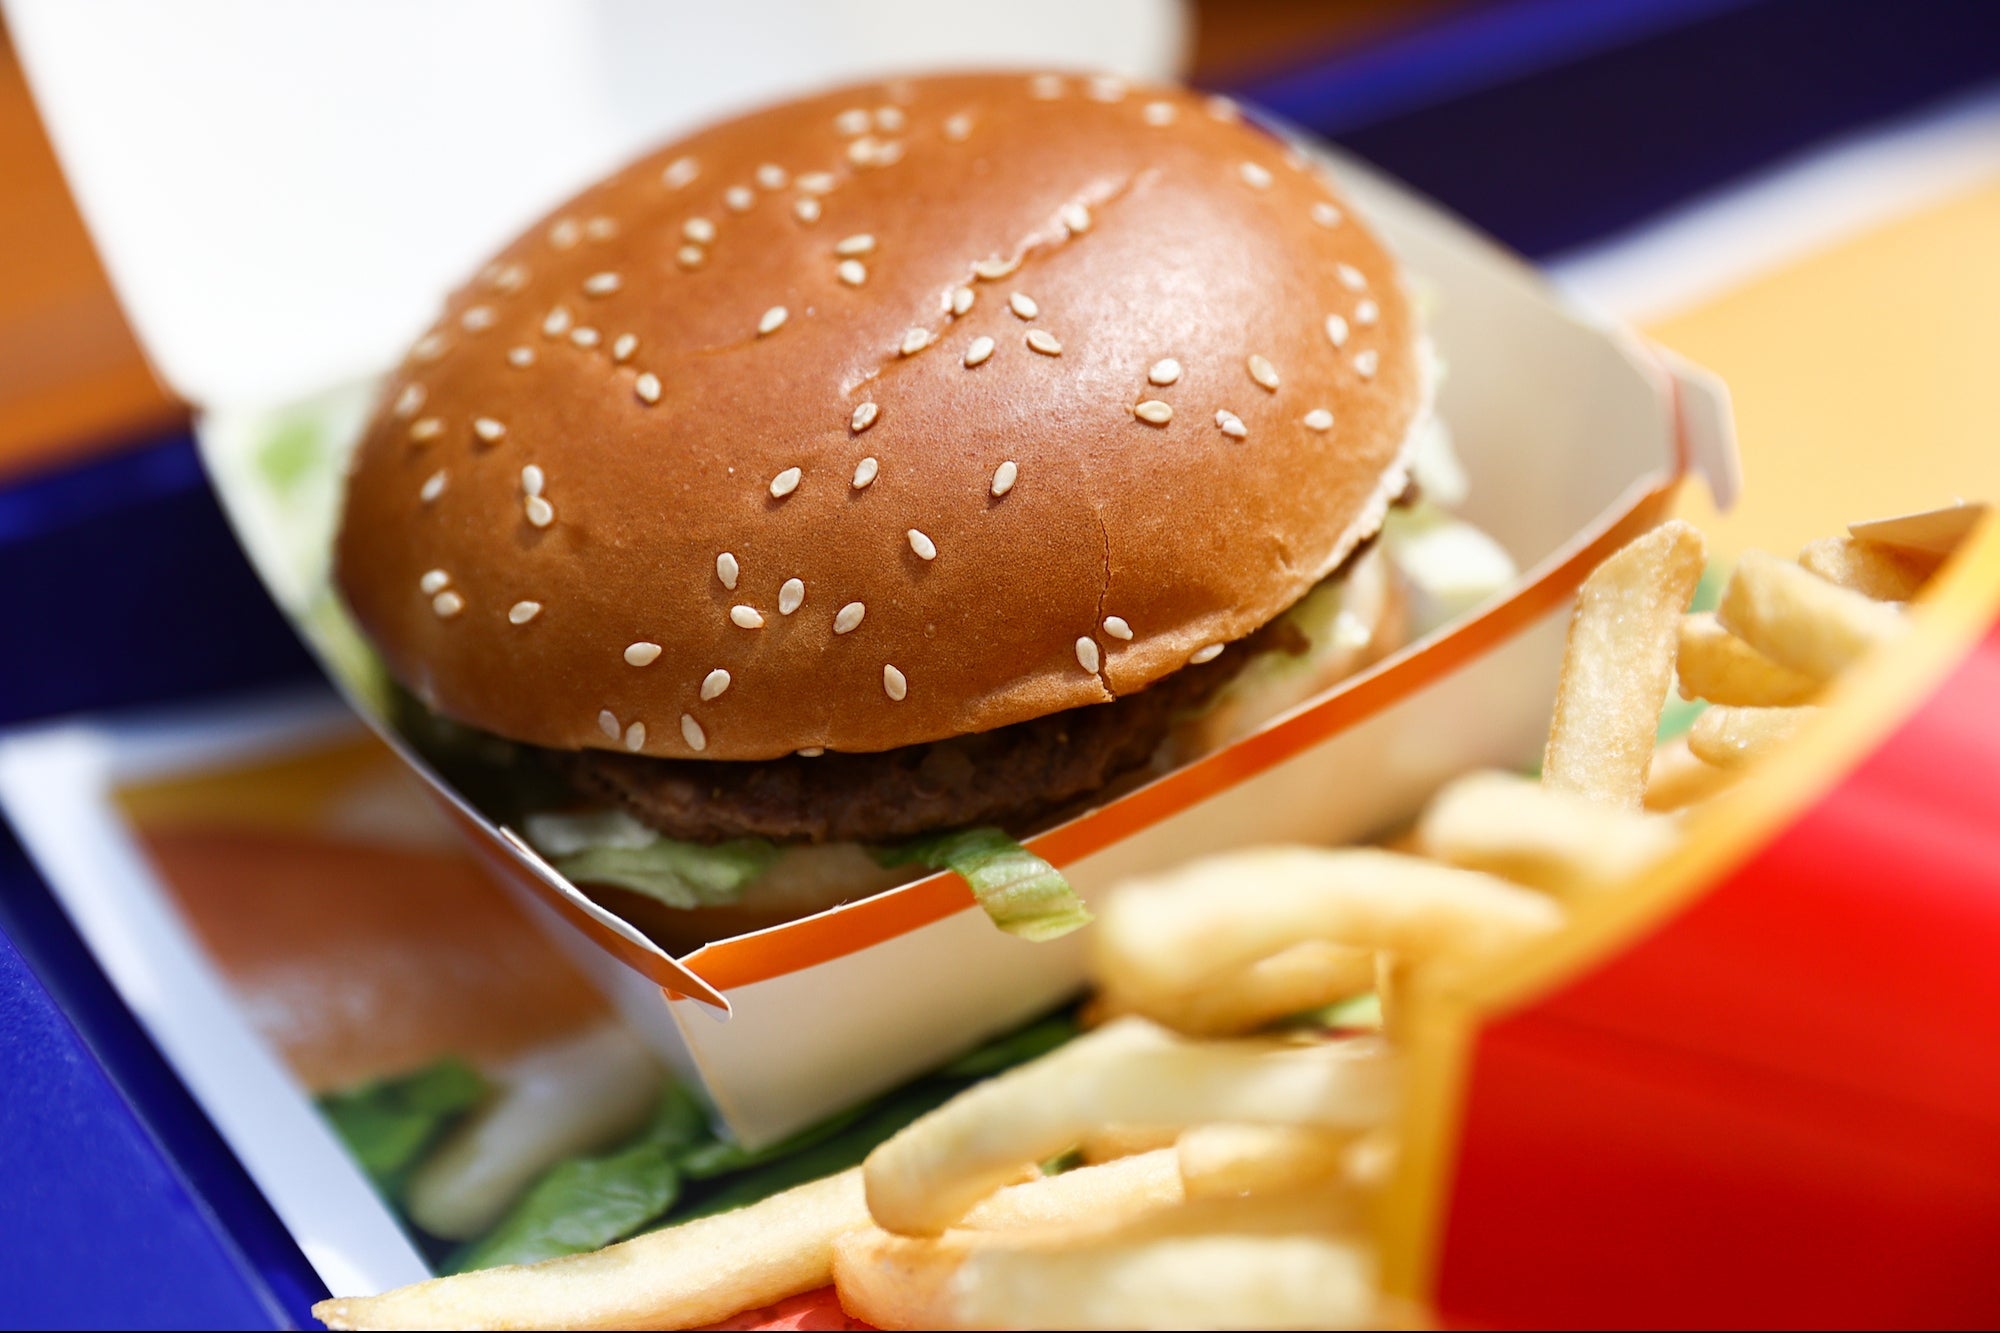 McDonald's CFO: Bigger Burgers, More Meat Testing This Year